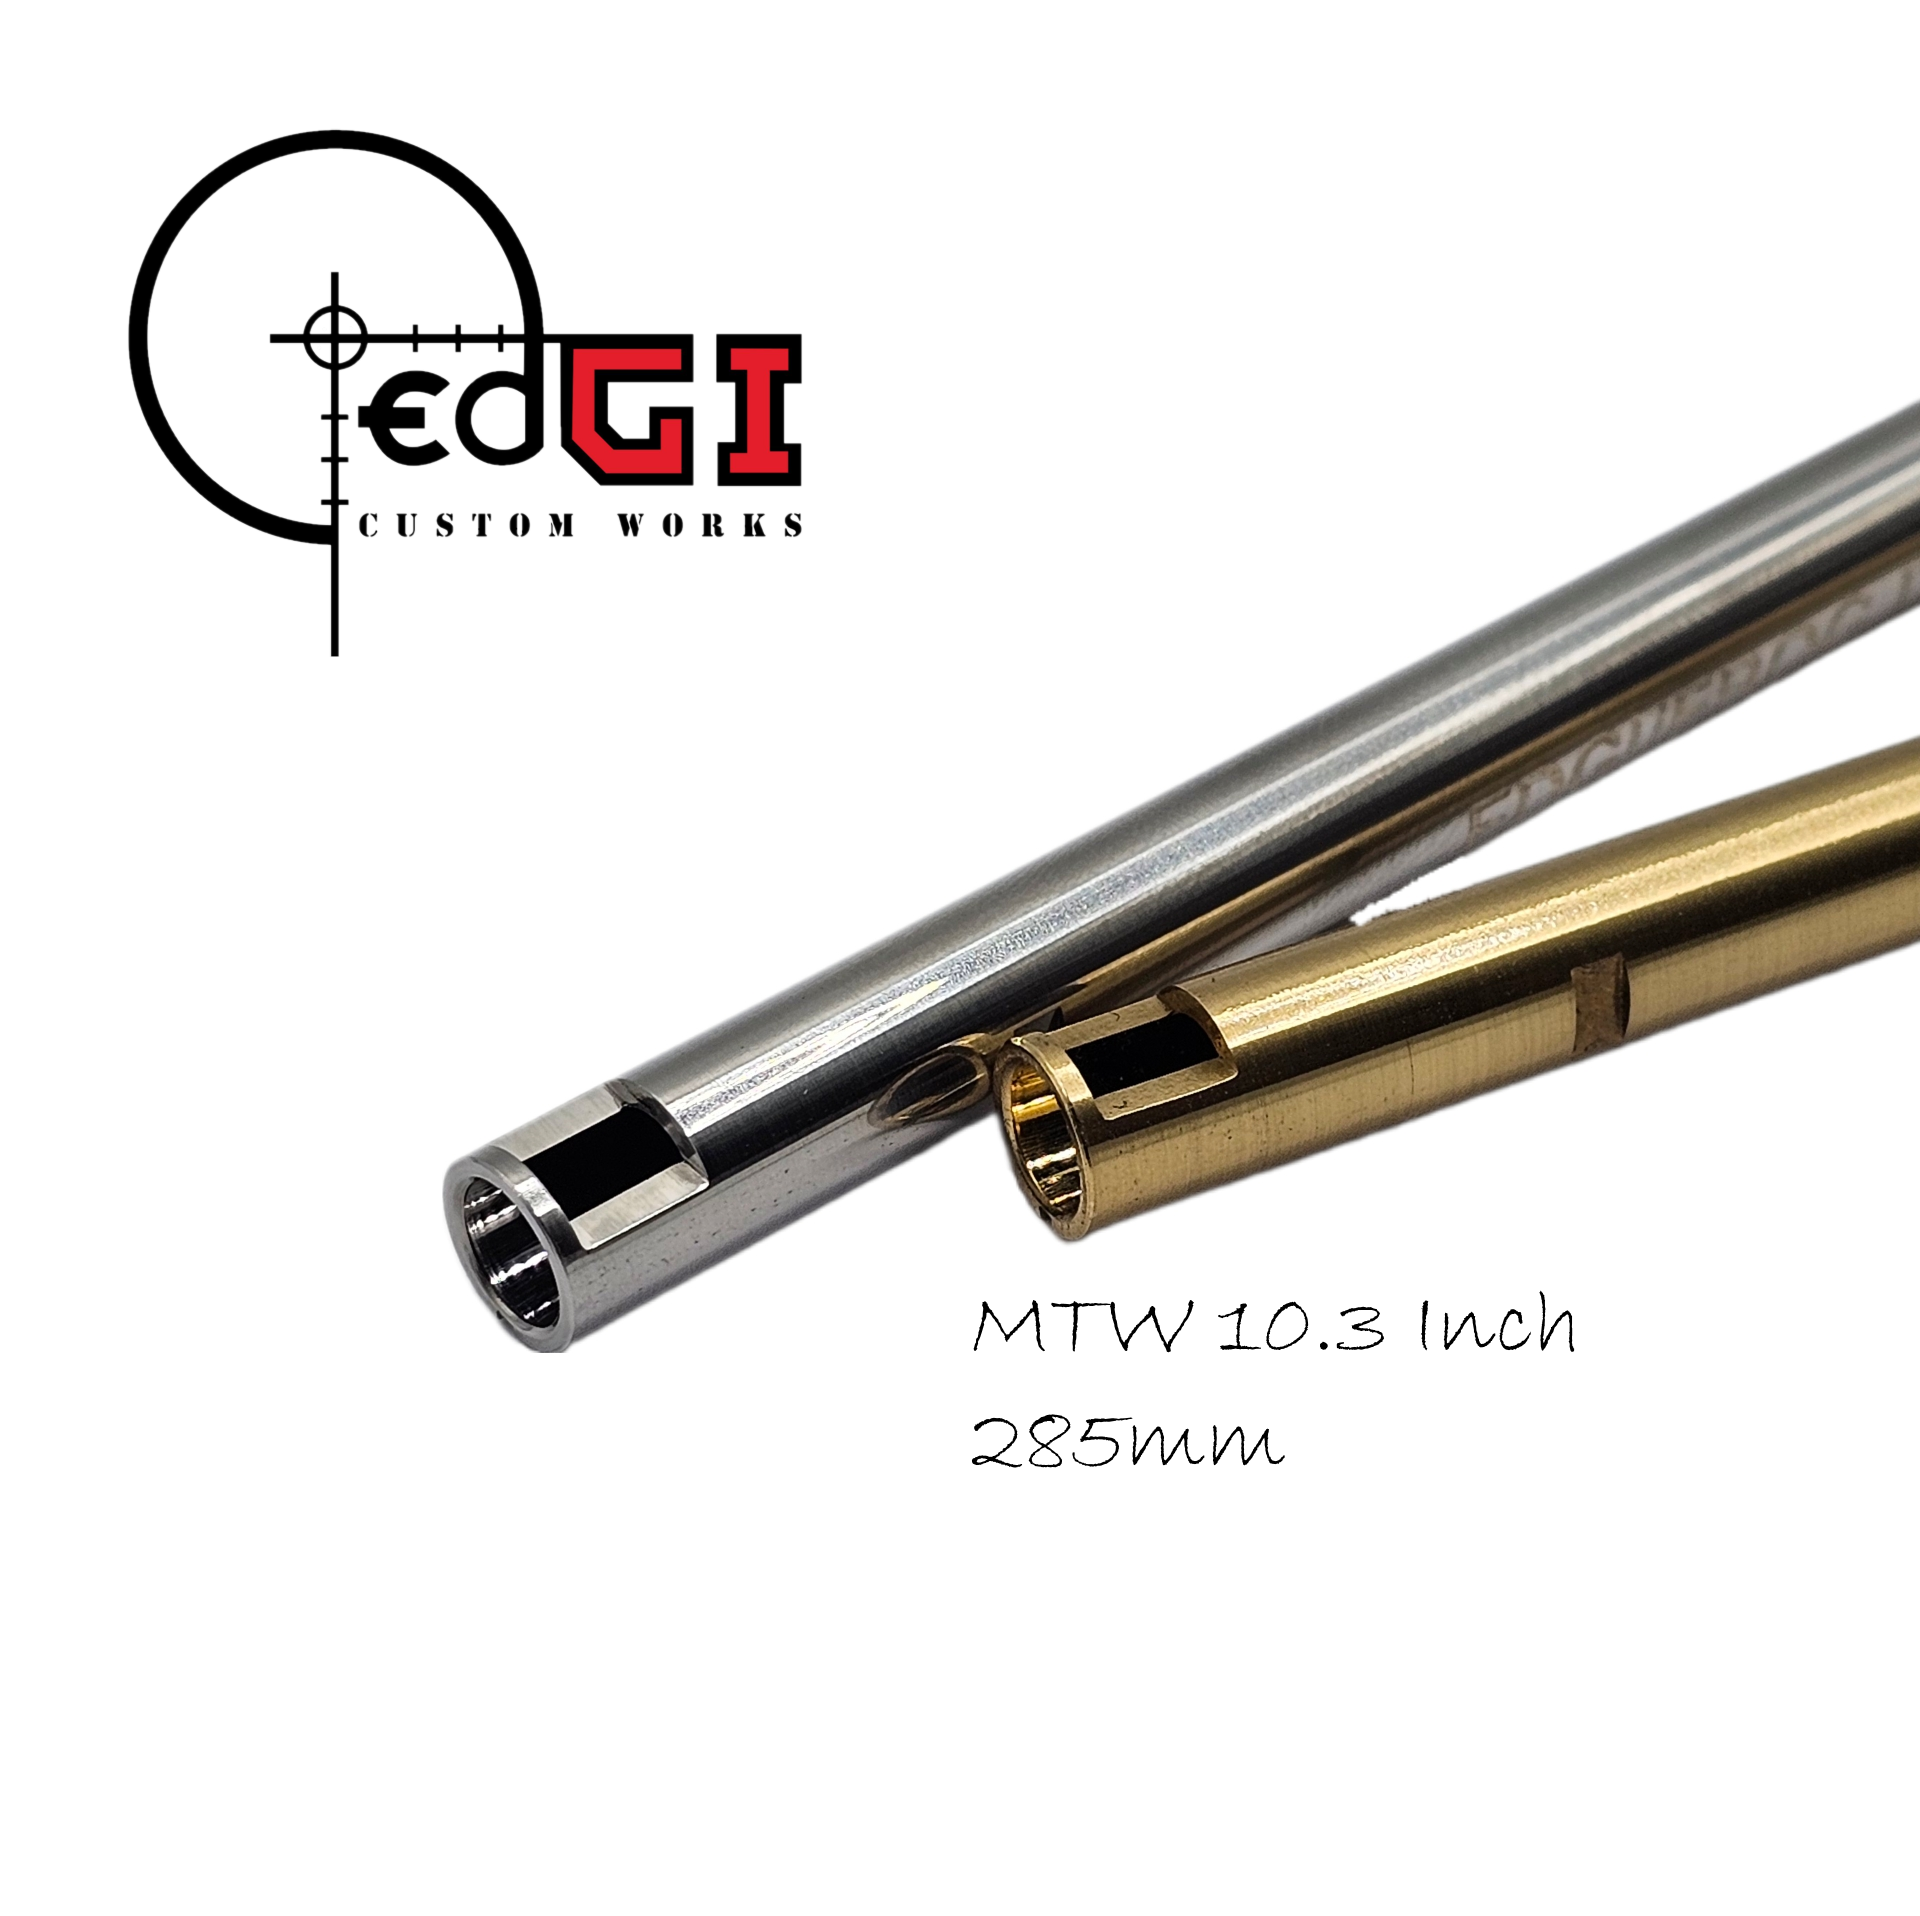 Edgi Custom Works - 285mm AEG Inner Barrel - MTW 10.3"